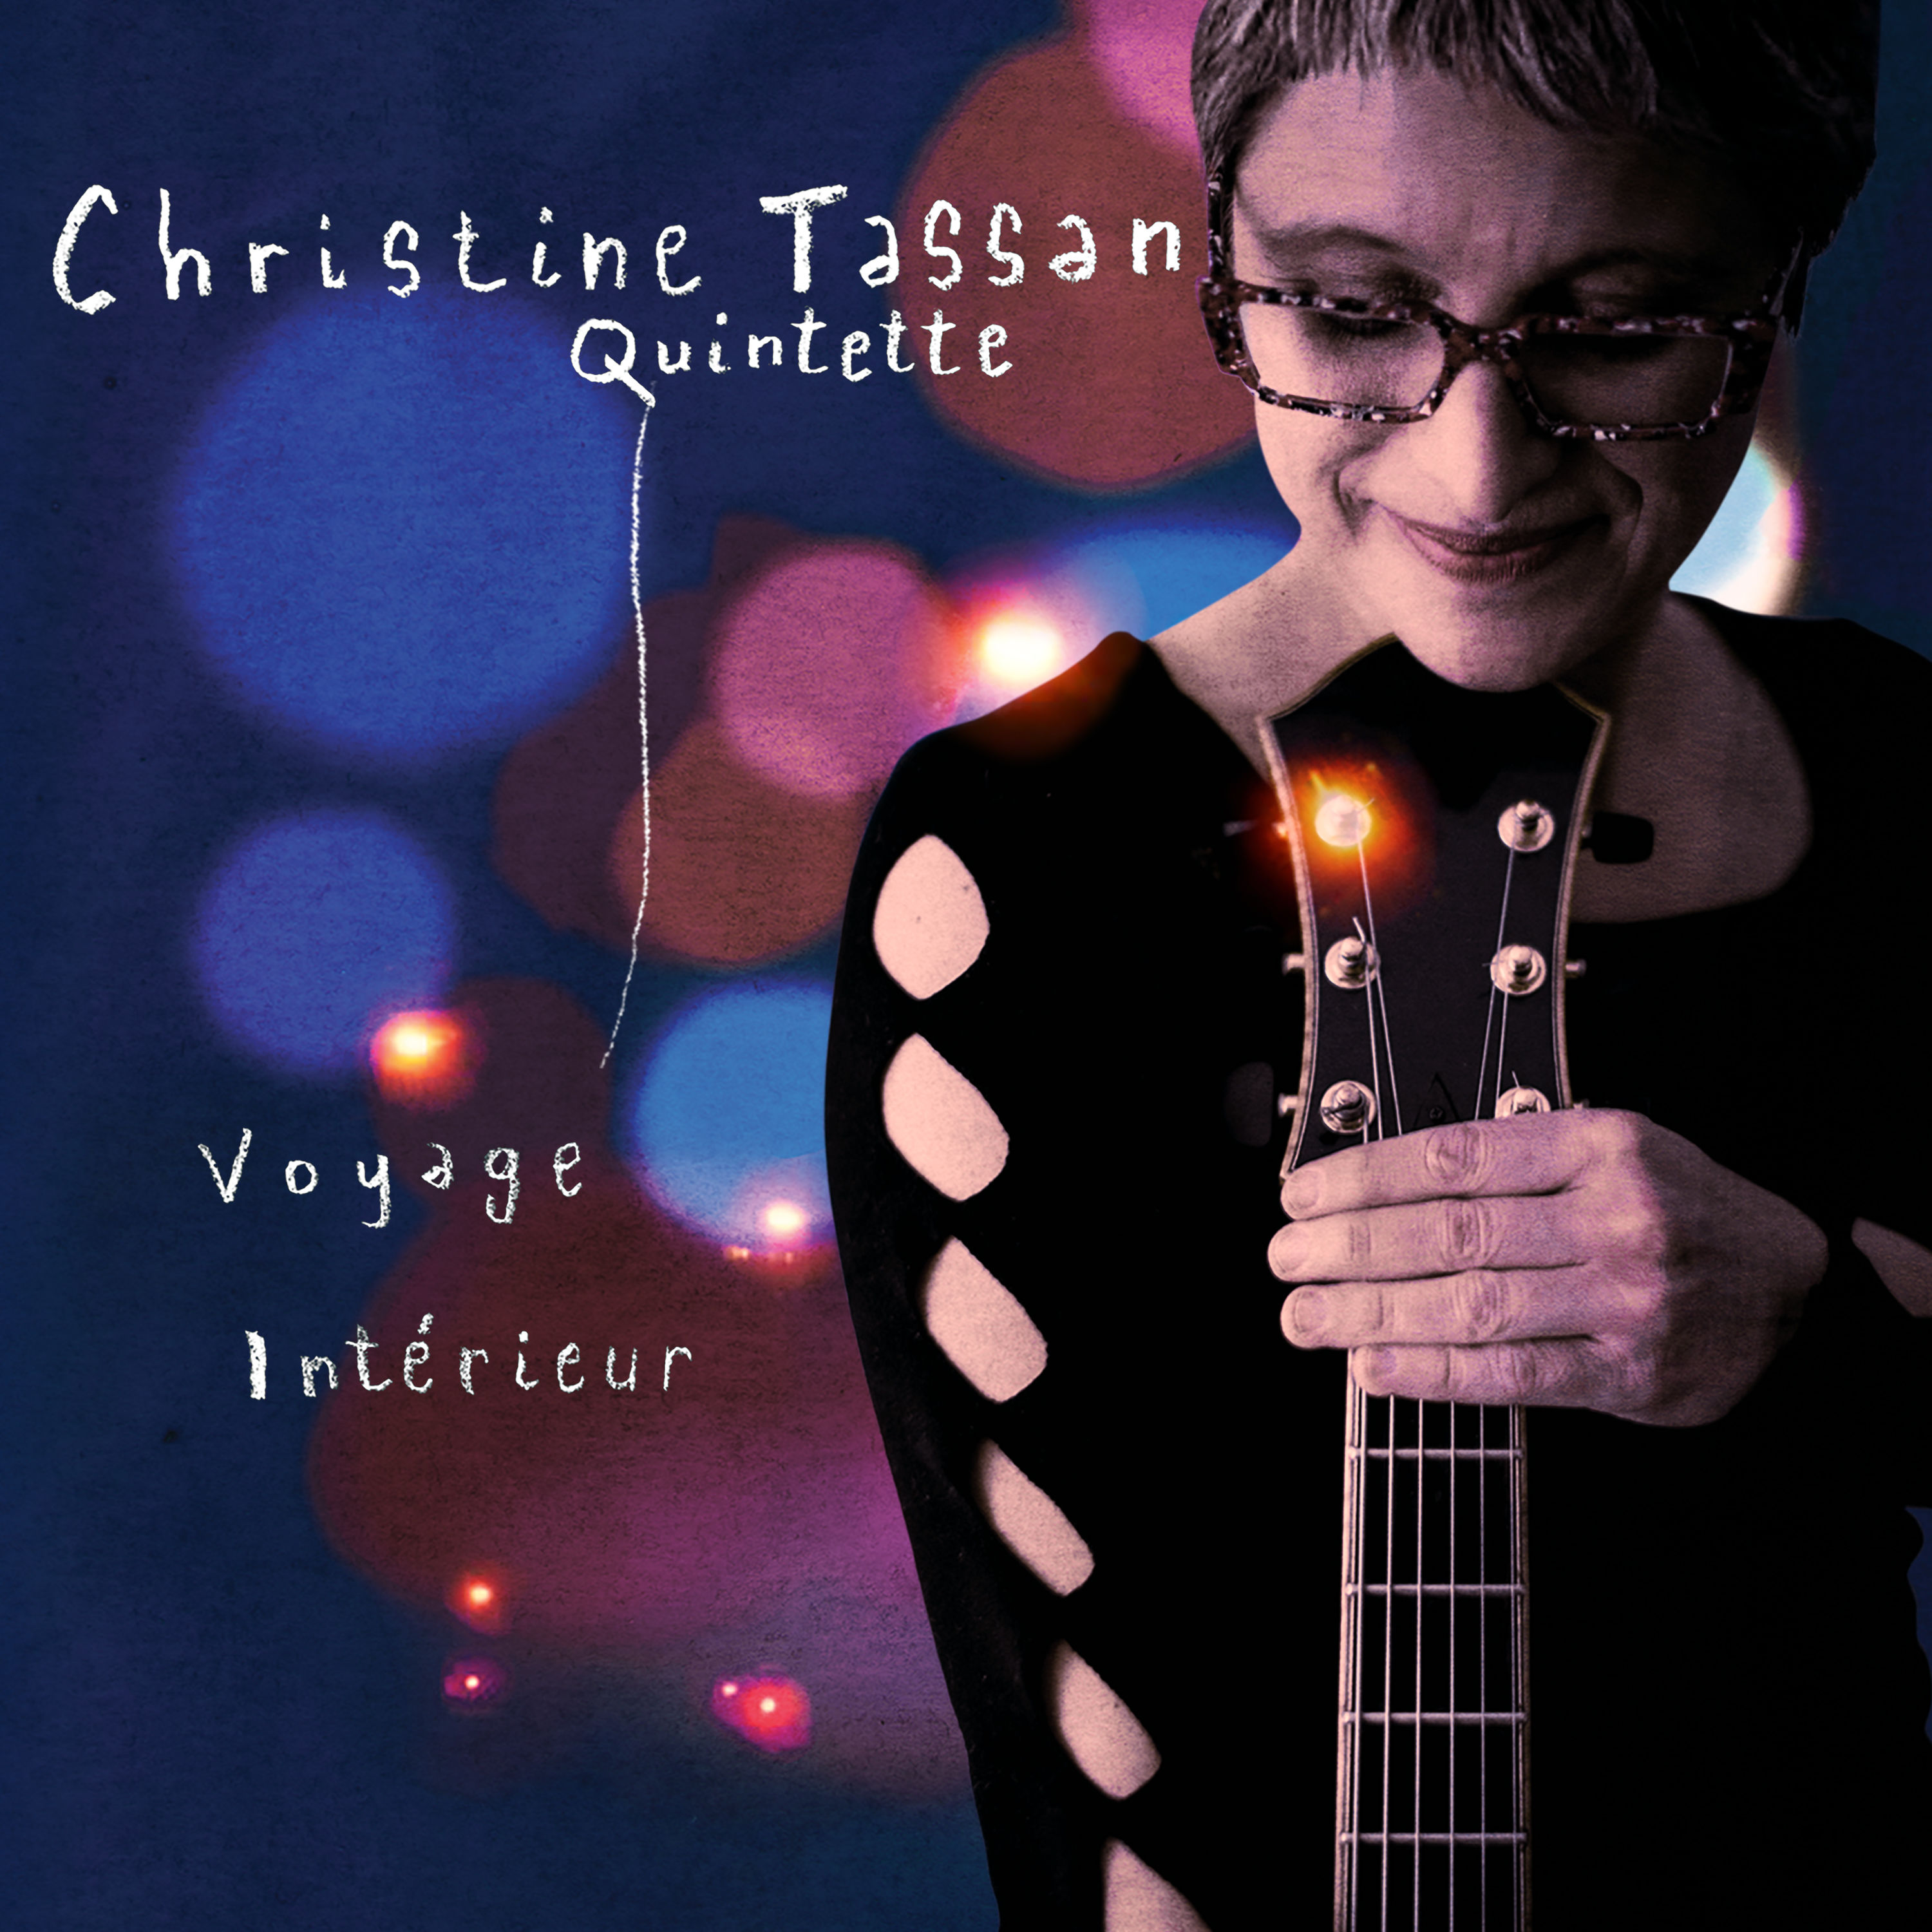 Christine Tassan Quintette – Voyage intérieur (2020) [FLAC 24bit/44,1kHz]